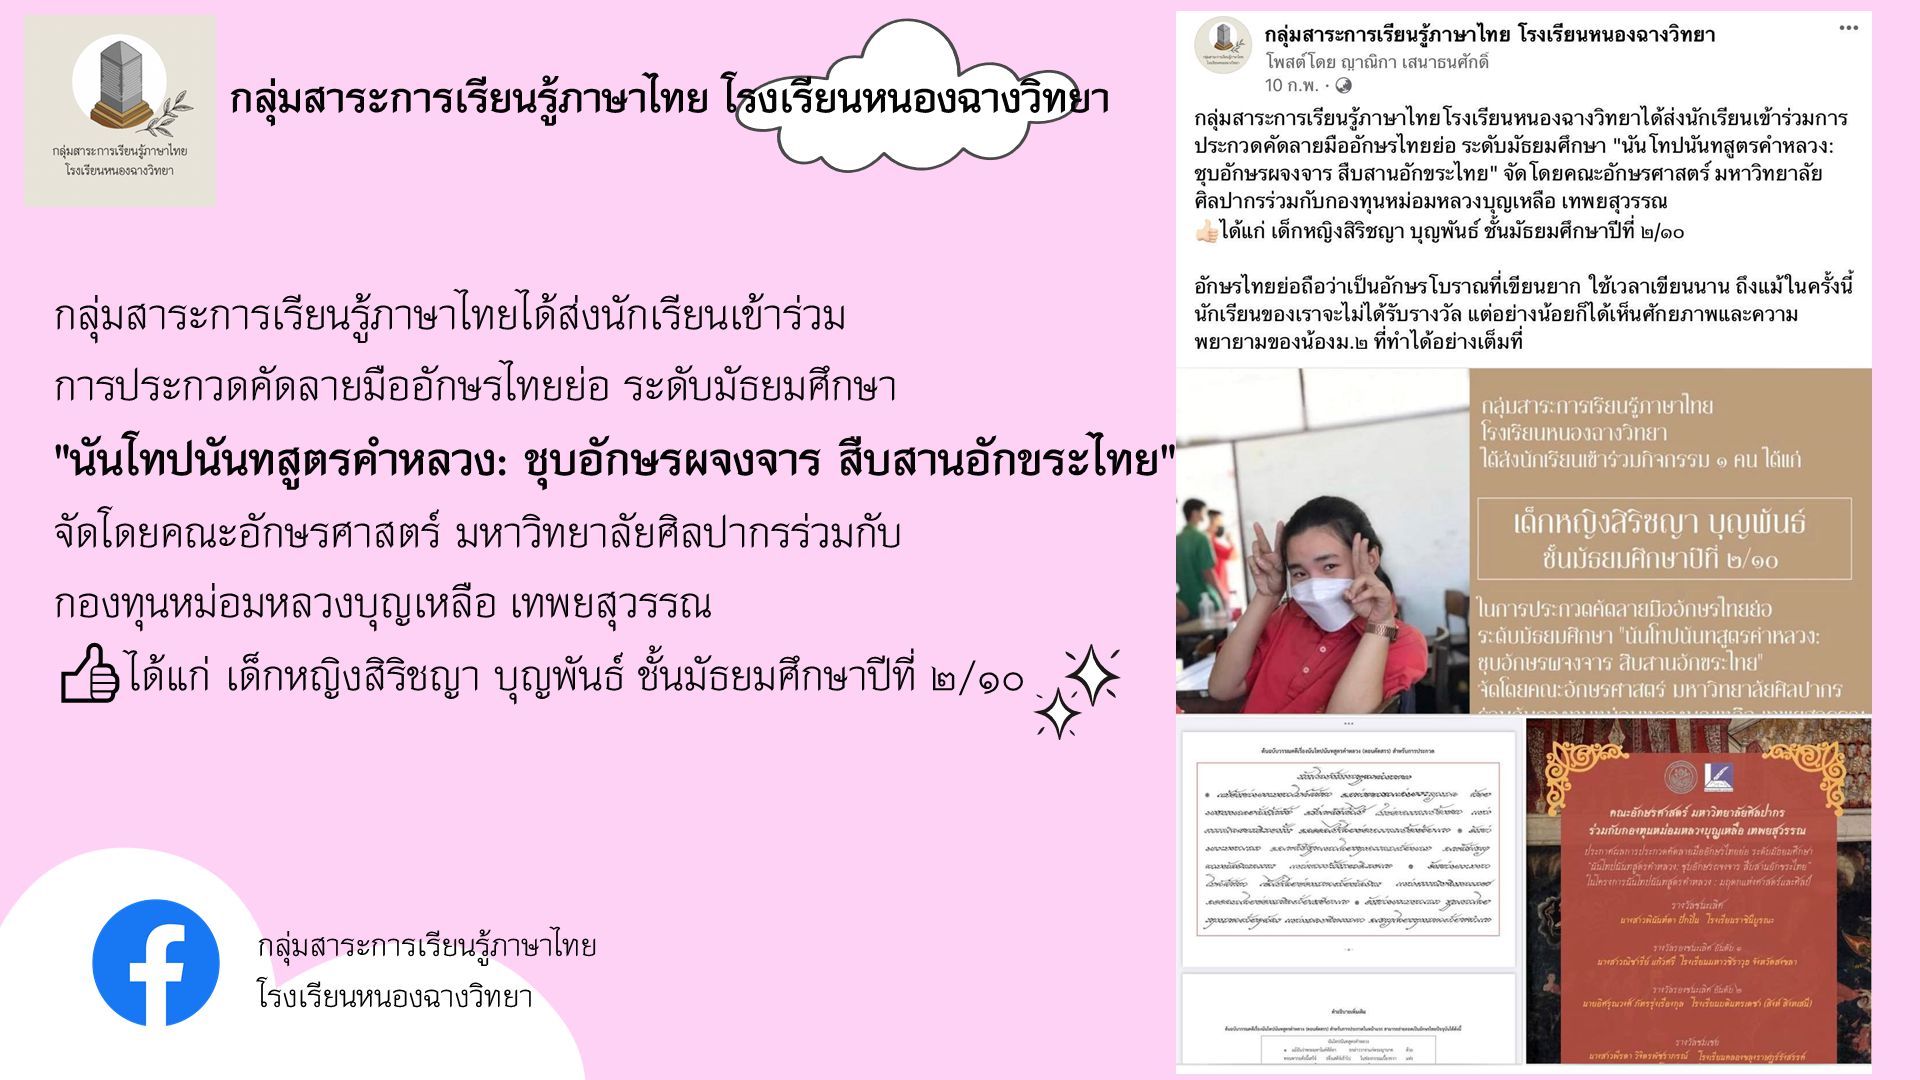 กลุ่มสาระการเรียนรู้ภาษาไทยโรงเรียนหนองฉางวิทยาได้ส่งนักเรียนเข้าร่วมการประกวดคัดลายมืออักษรไทยย่อ